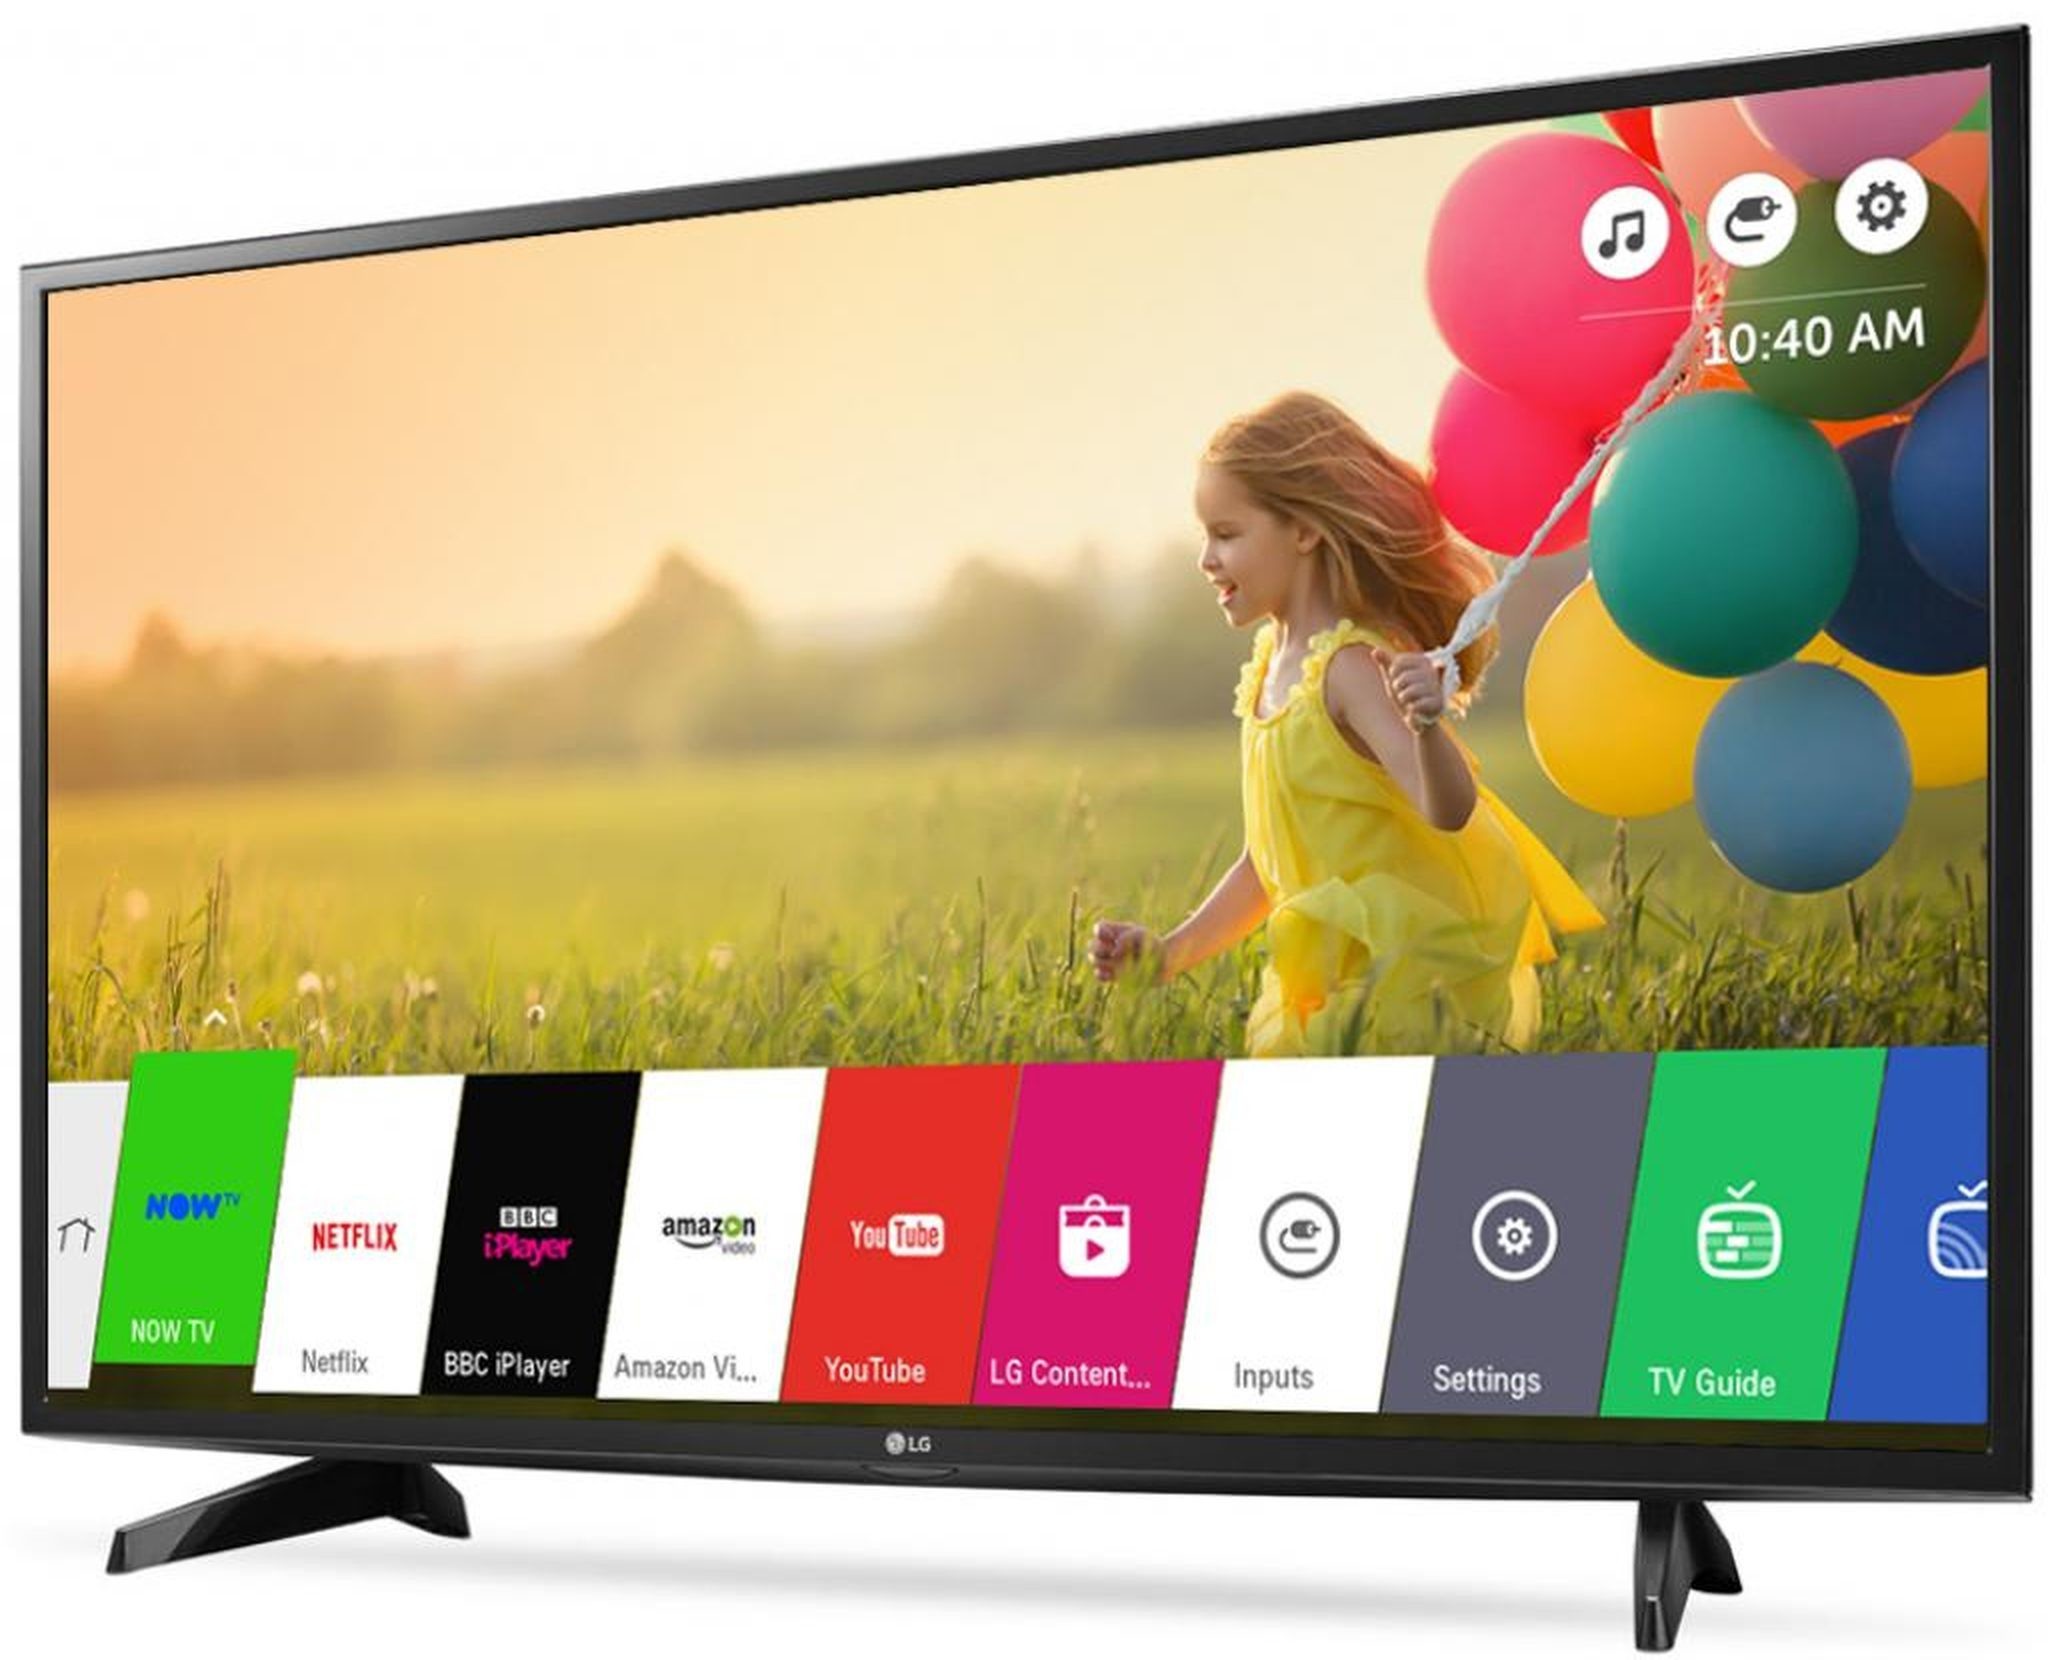 Купить телевизор смарт тв 43 дюймов лучший. Телевизор LG 43 дюйма смарт ТВ. Телевизор LG Smart TV lh570v. LG 43lh570v. Lg43lh570v-ZD.